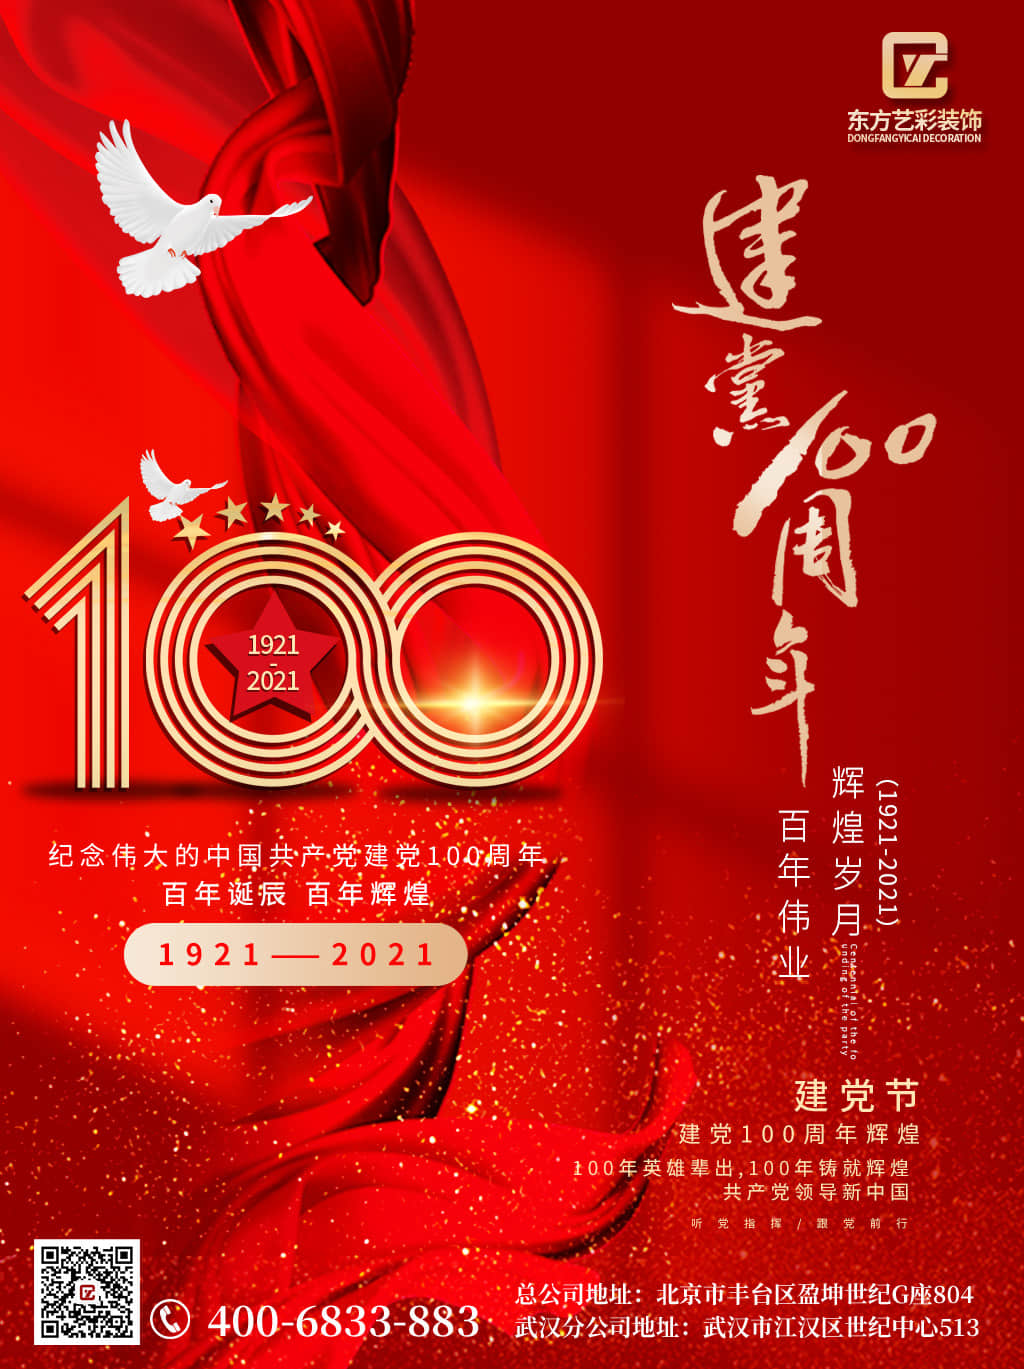 东方艺彩装饰 庆祝建党100周年 “手绘T恤”主题活动